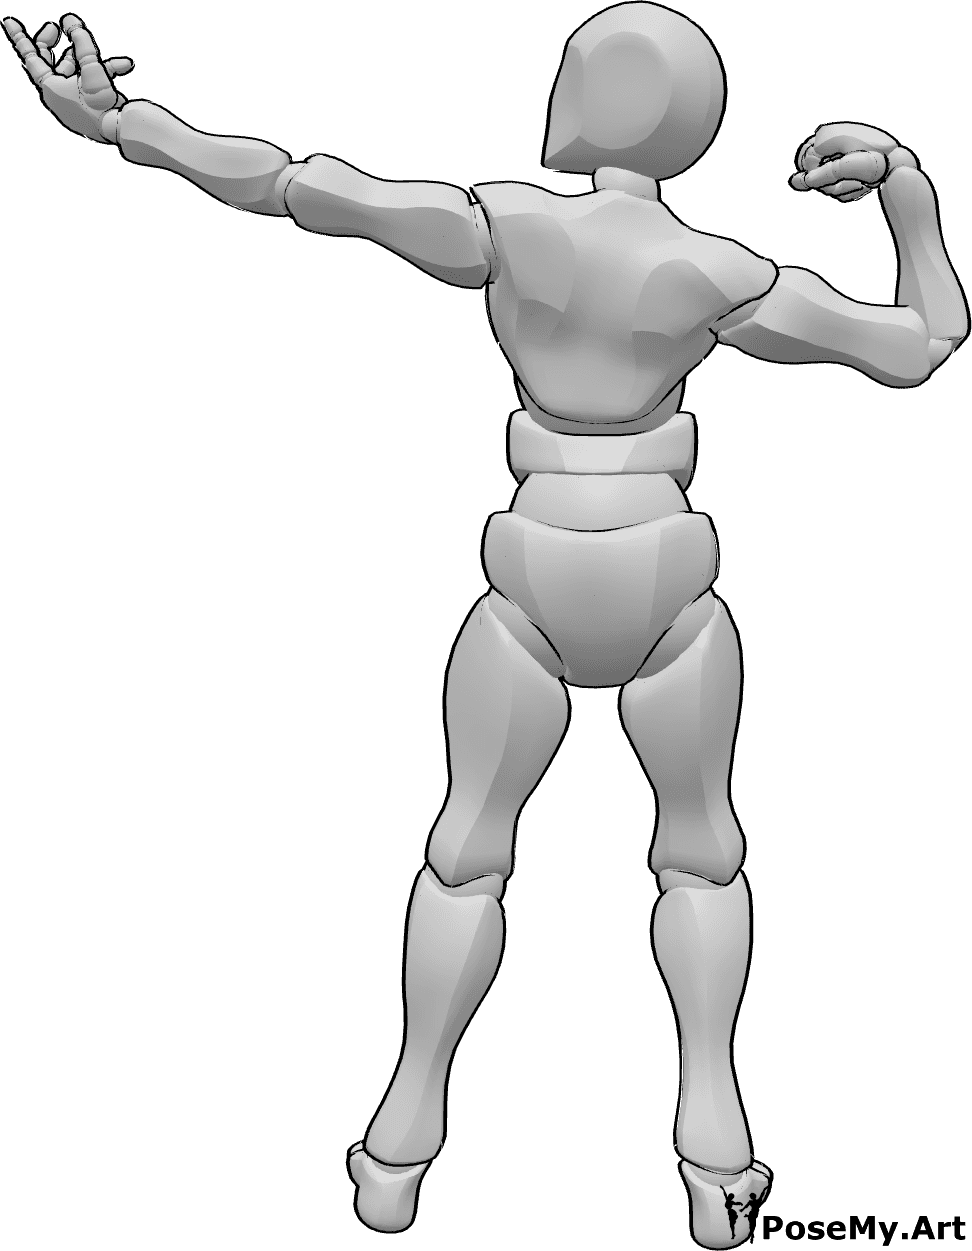 Posen-Referenz- Männliche Muskeln Pose - Männchen zeigt seine Muskeln in Pose